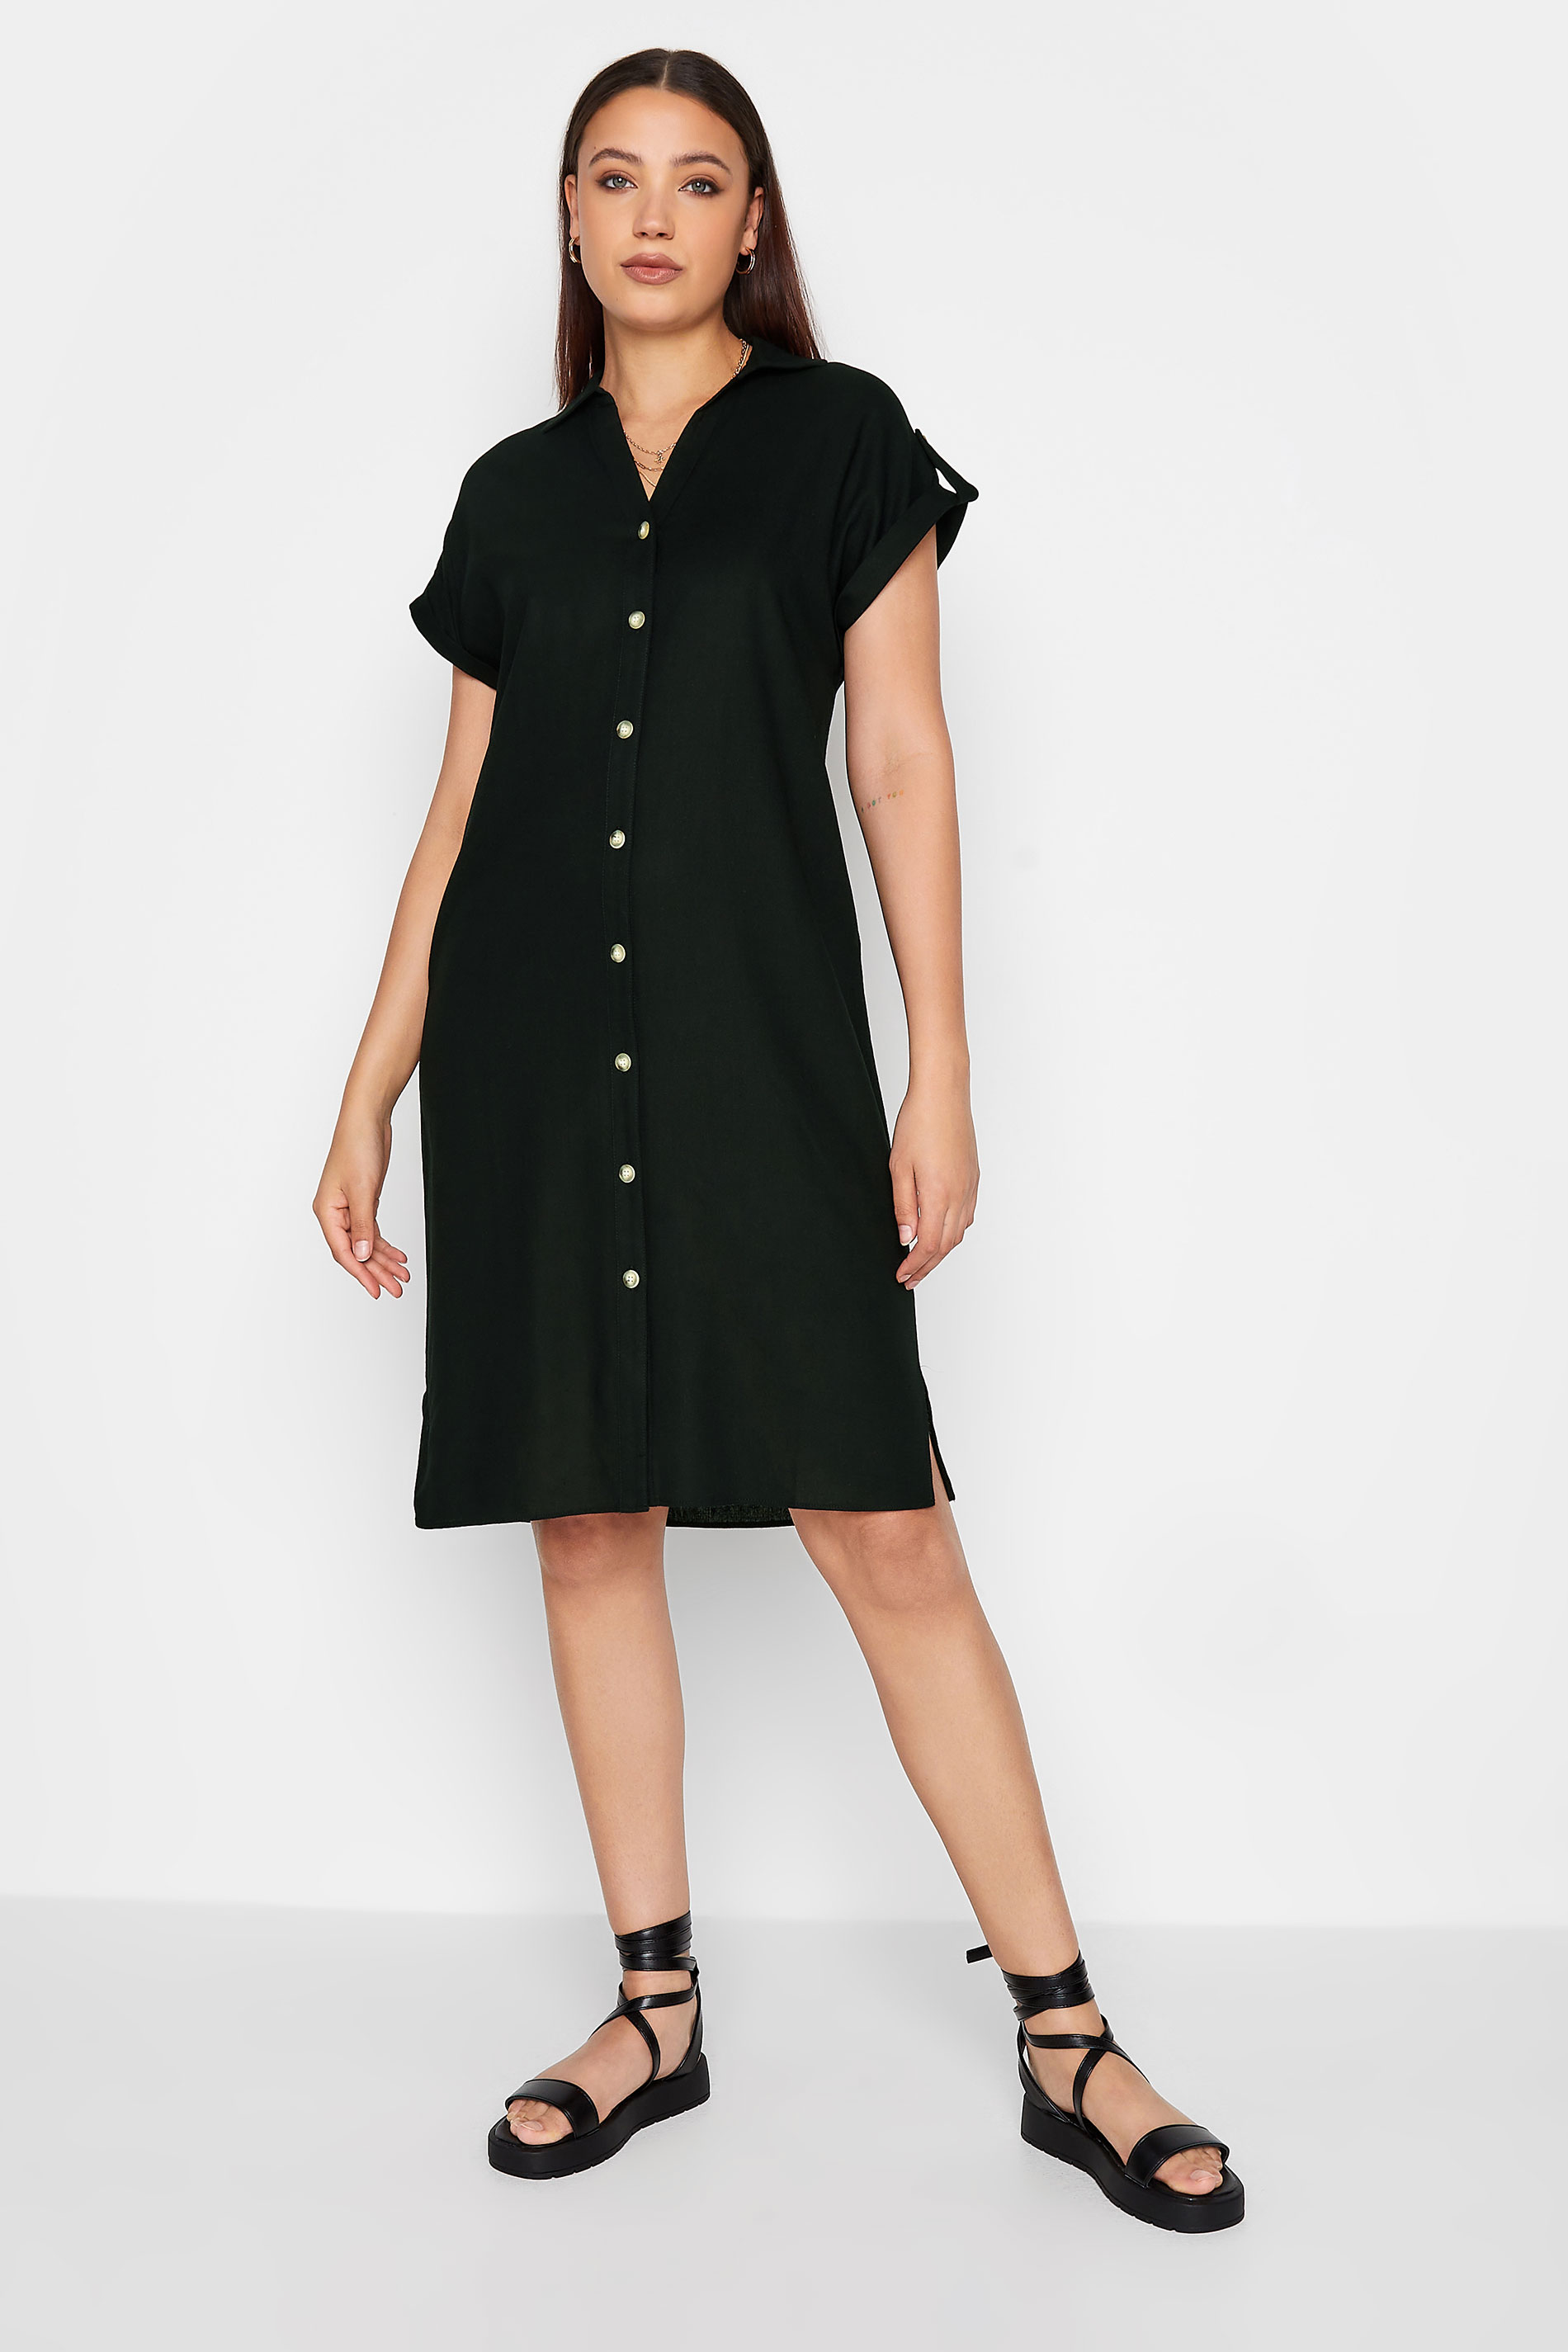 LTS Tall Women's Black Linen Look Button Through Shirt Dress | Long Tall Sally  1